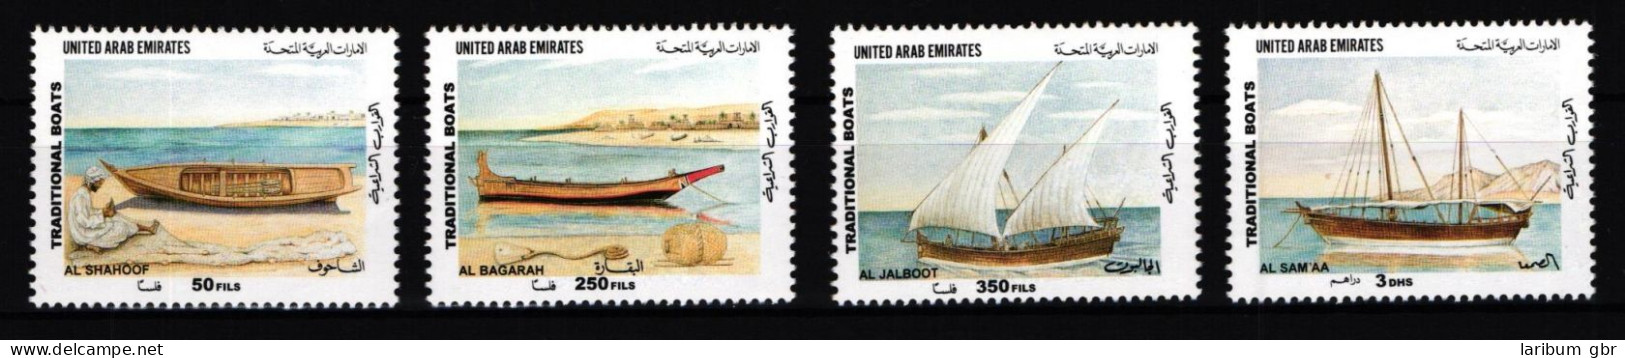 Vereinigte Arabische Emirate 657-660 Postfrisch Schiffe #JH174 - United Arab Emirates (General)